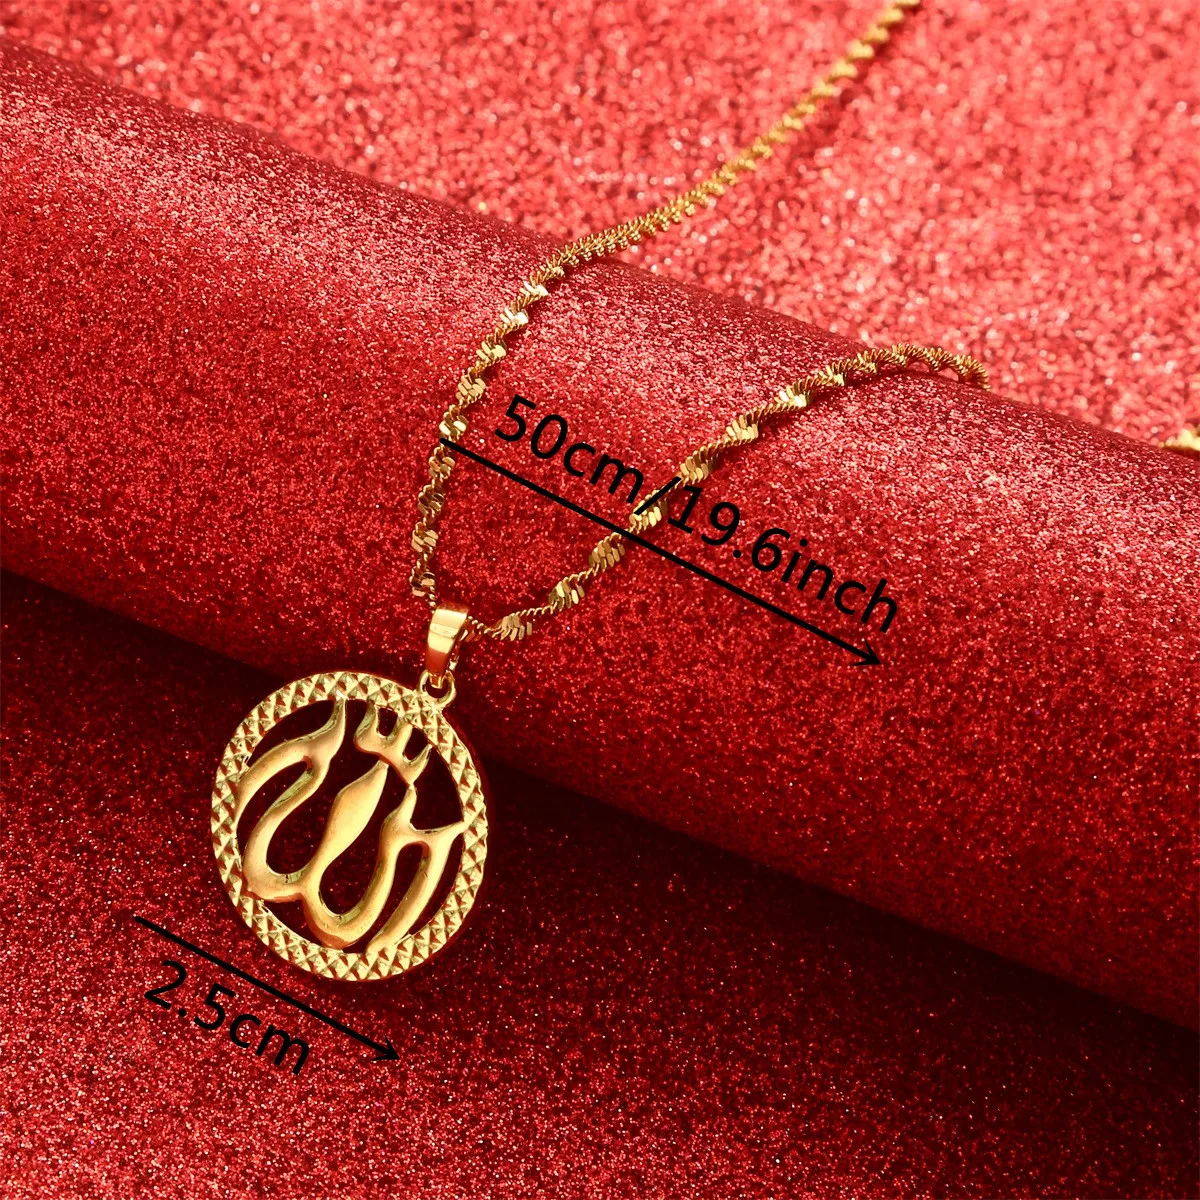 Buy Memoir Gold Allah word, in Crystal Aquarium design chain pendant  necklace muslim jewellery for Men/Women at Amazon.in